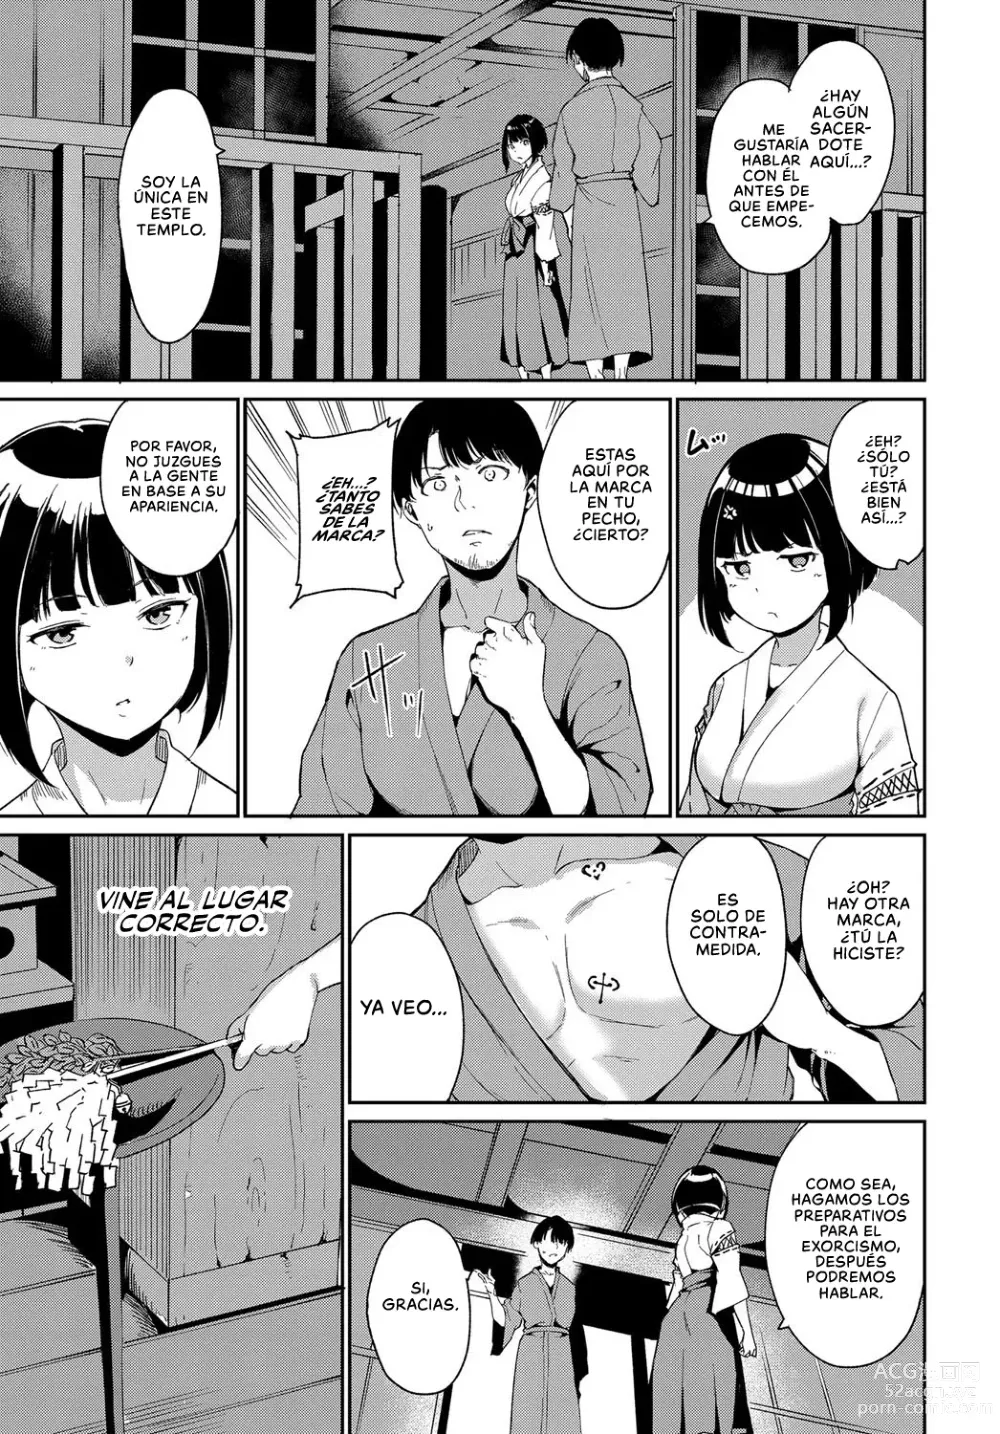 Page 35 of manga La Aldea Oscura Noche